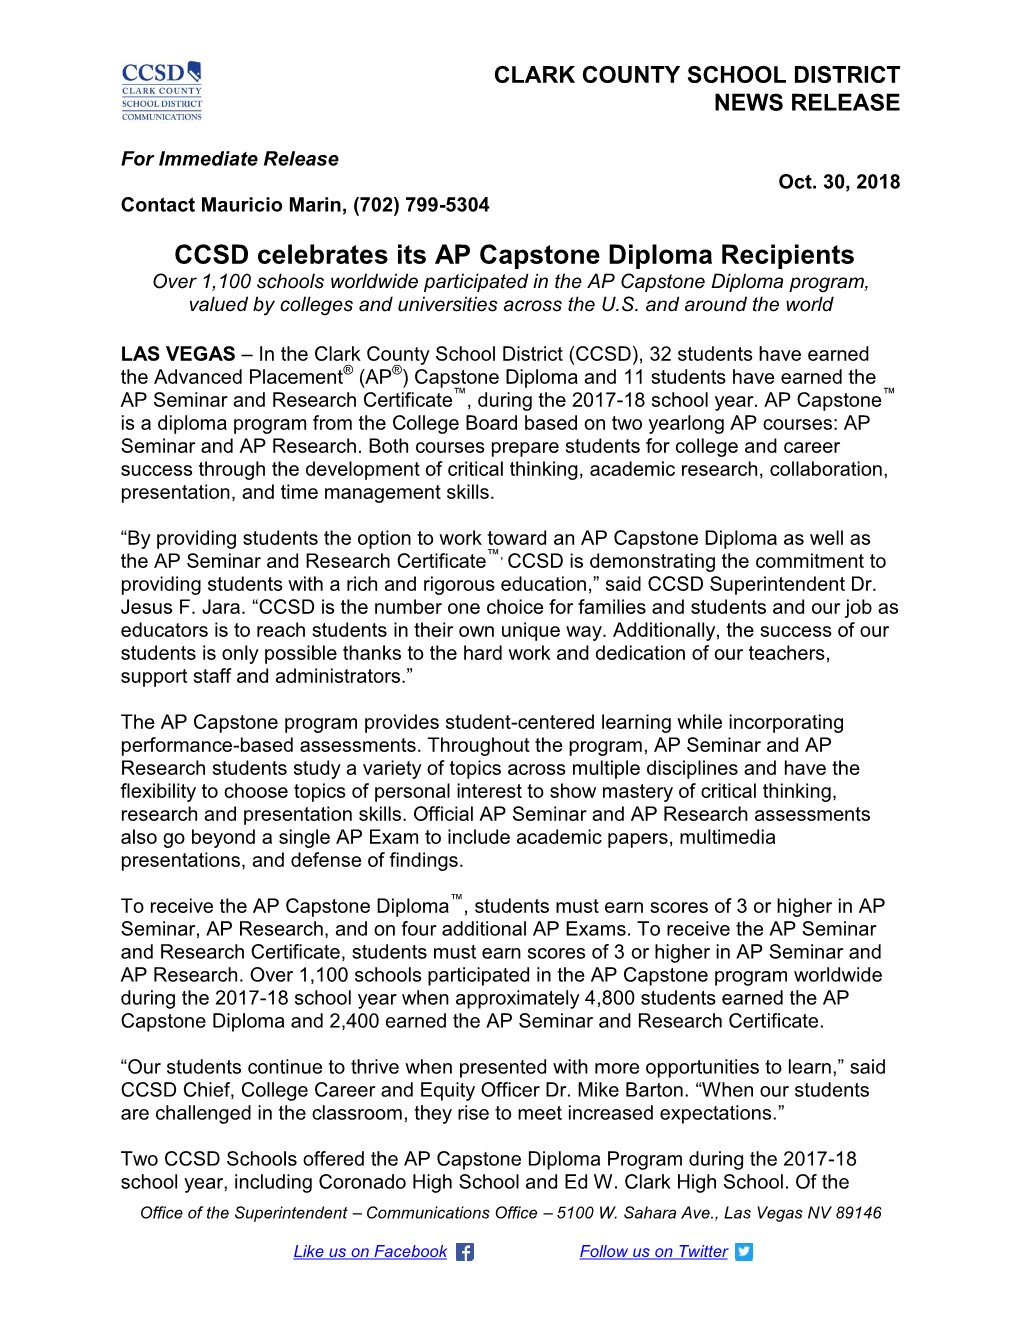 CCSD Celebrates Its AP Capstone Diploma Recipients